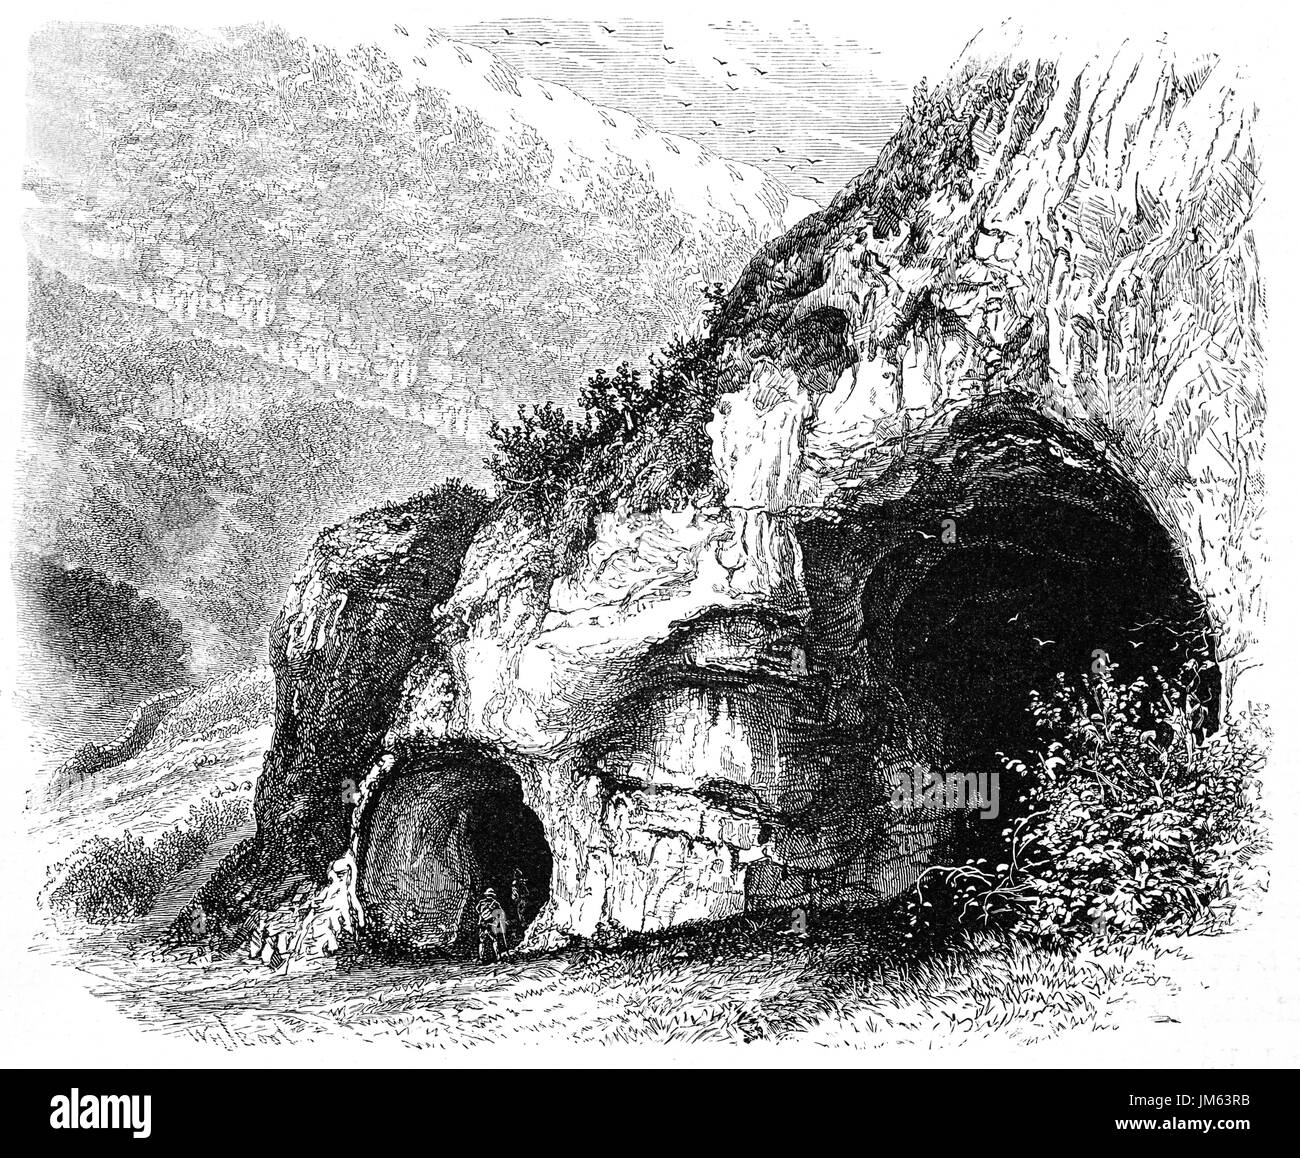 1870: Walkers esplorare uno dei fori di Colomba in Dovedale, una valle del Peak District, Derbyshire, Inghilterra Foto Stock